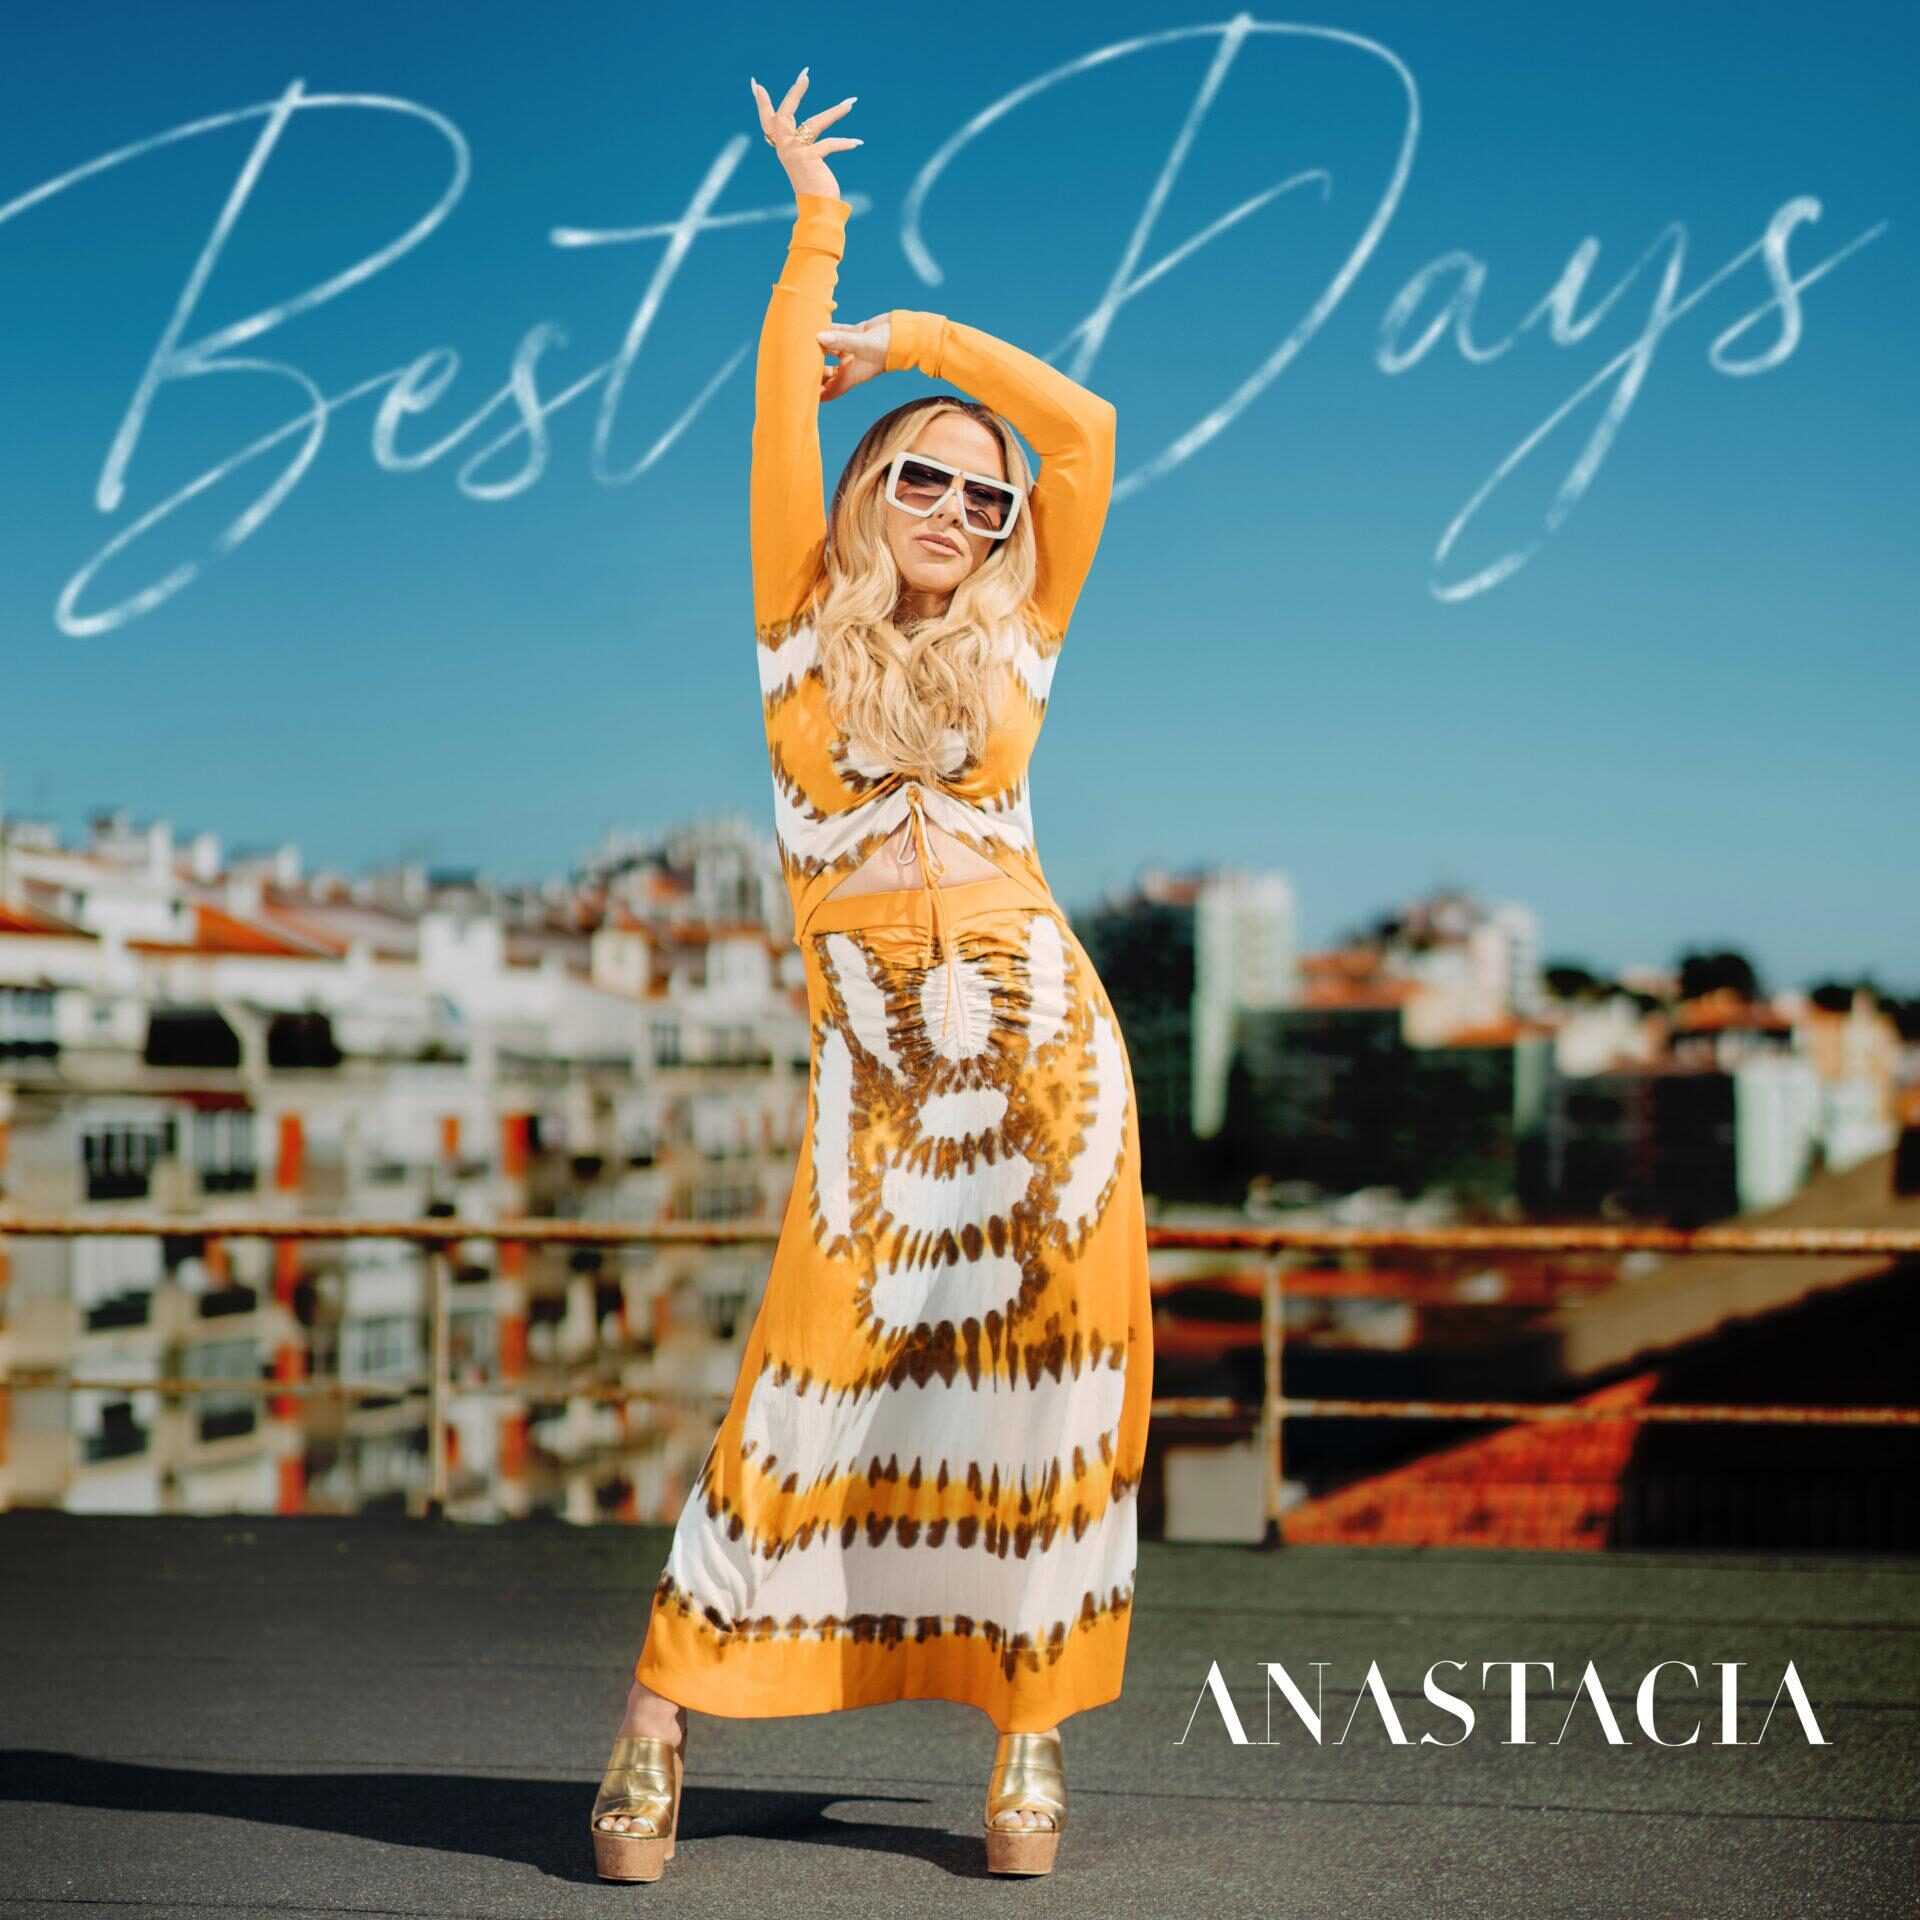 Anastacia “Best Days”